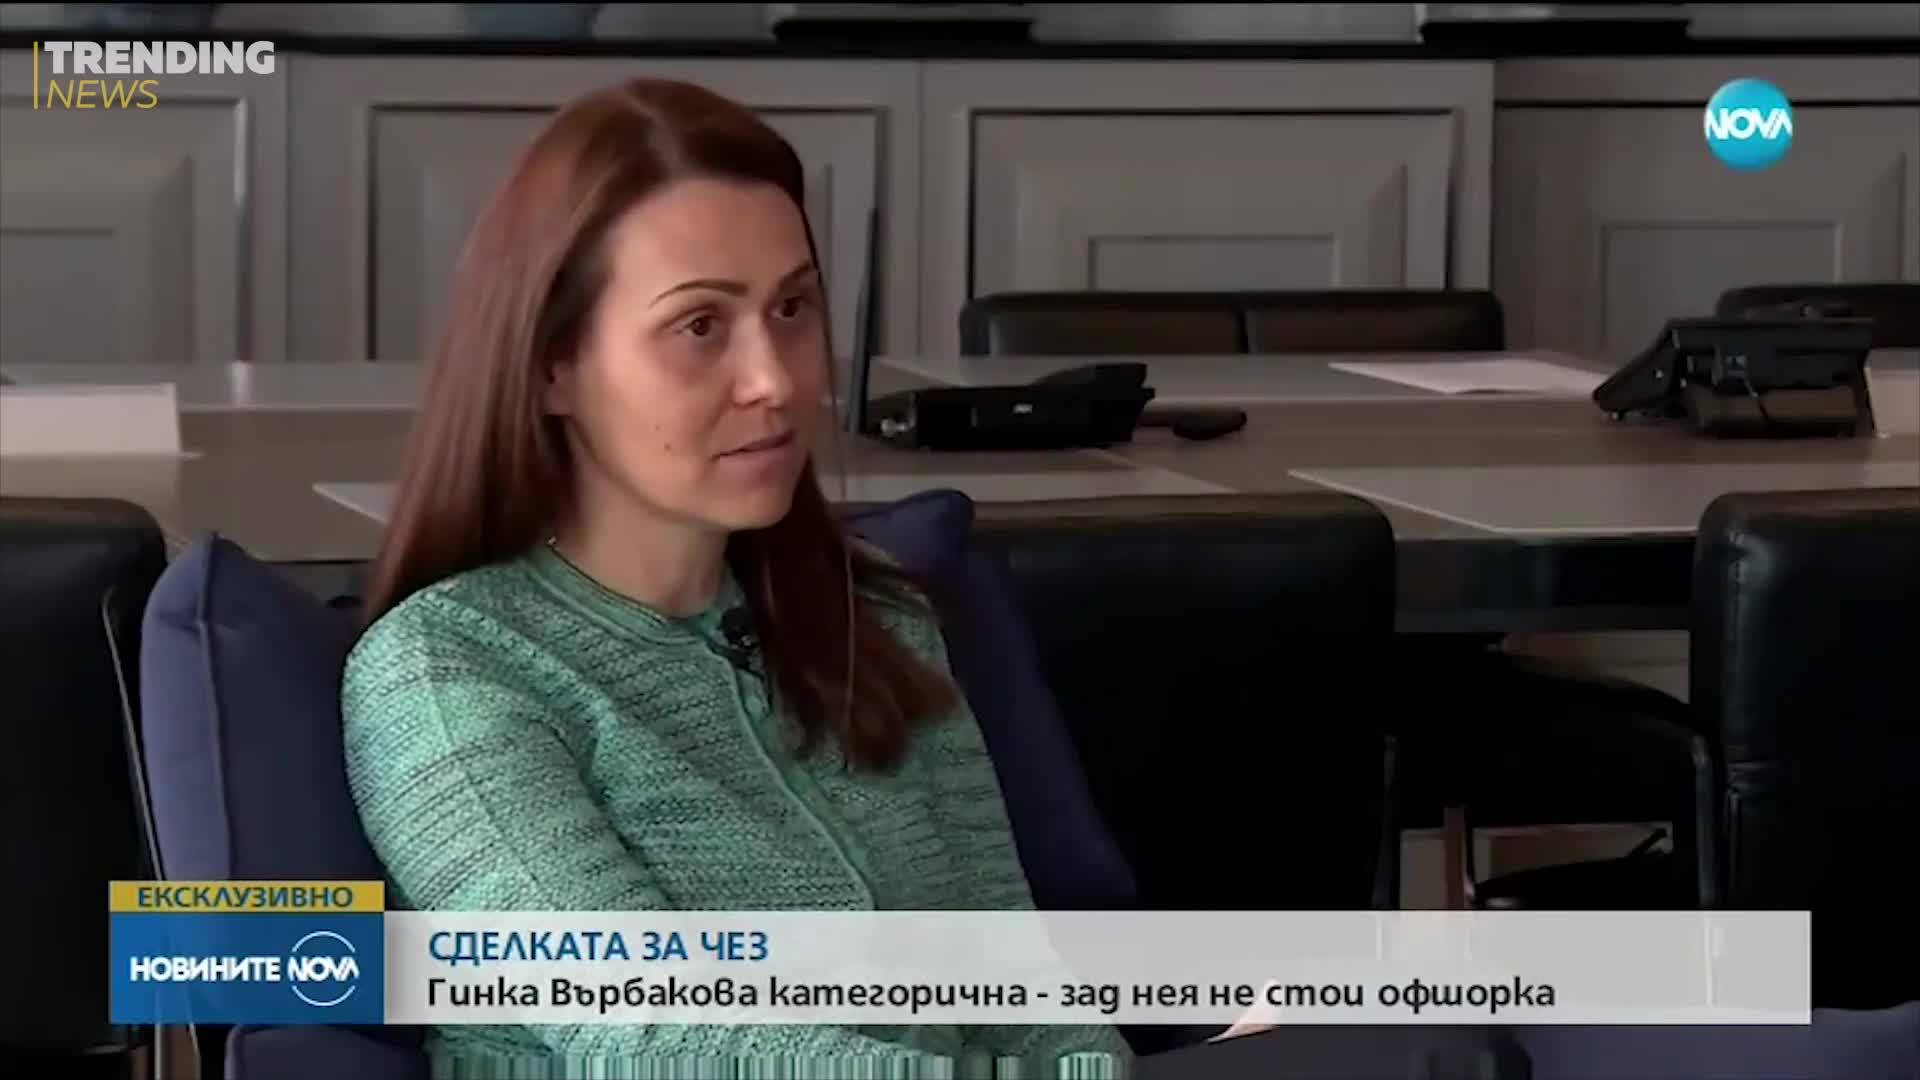 Гинка Върбакова предизвика фурор в социалните мрежи